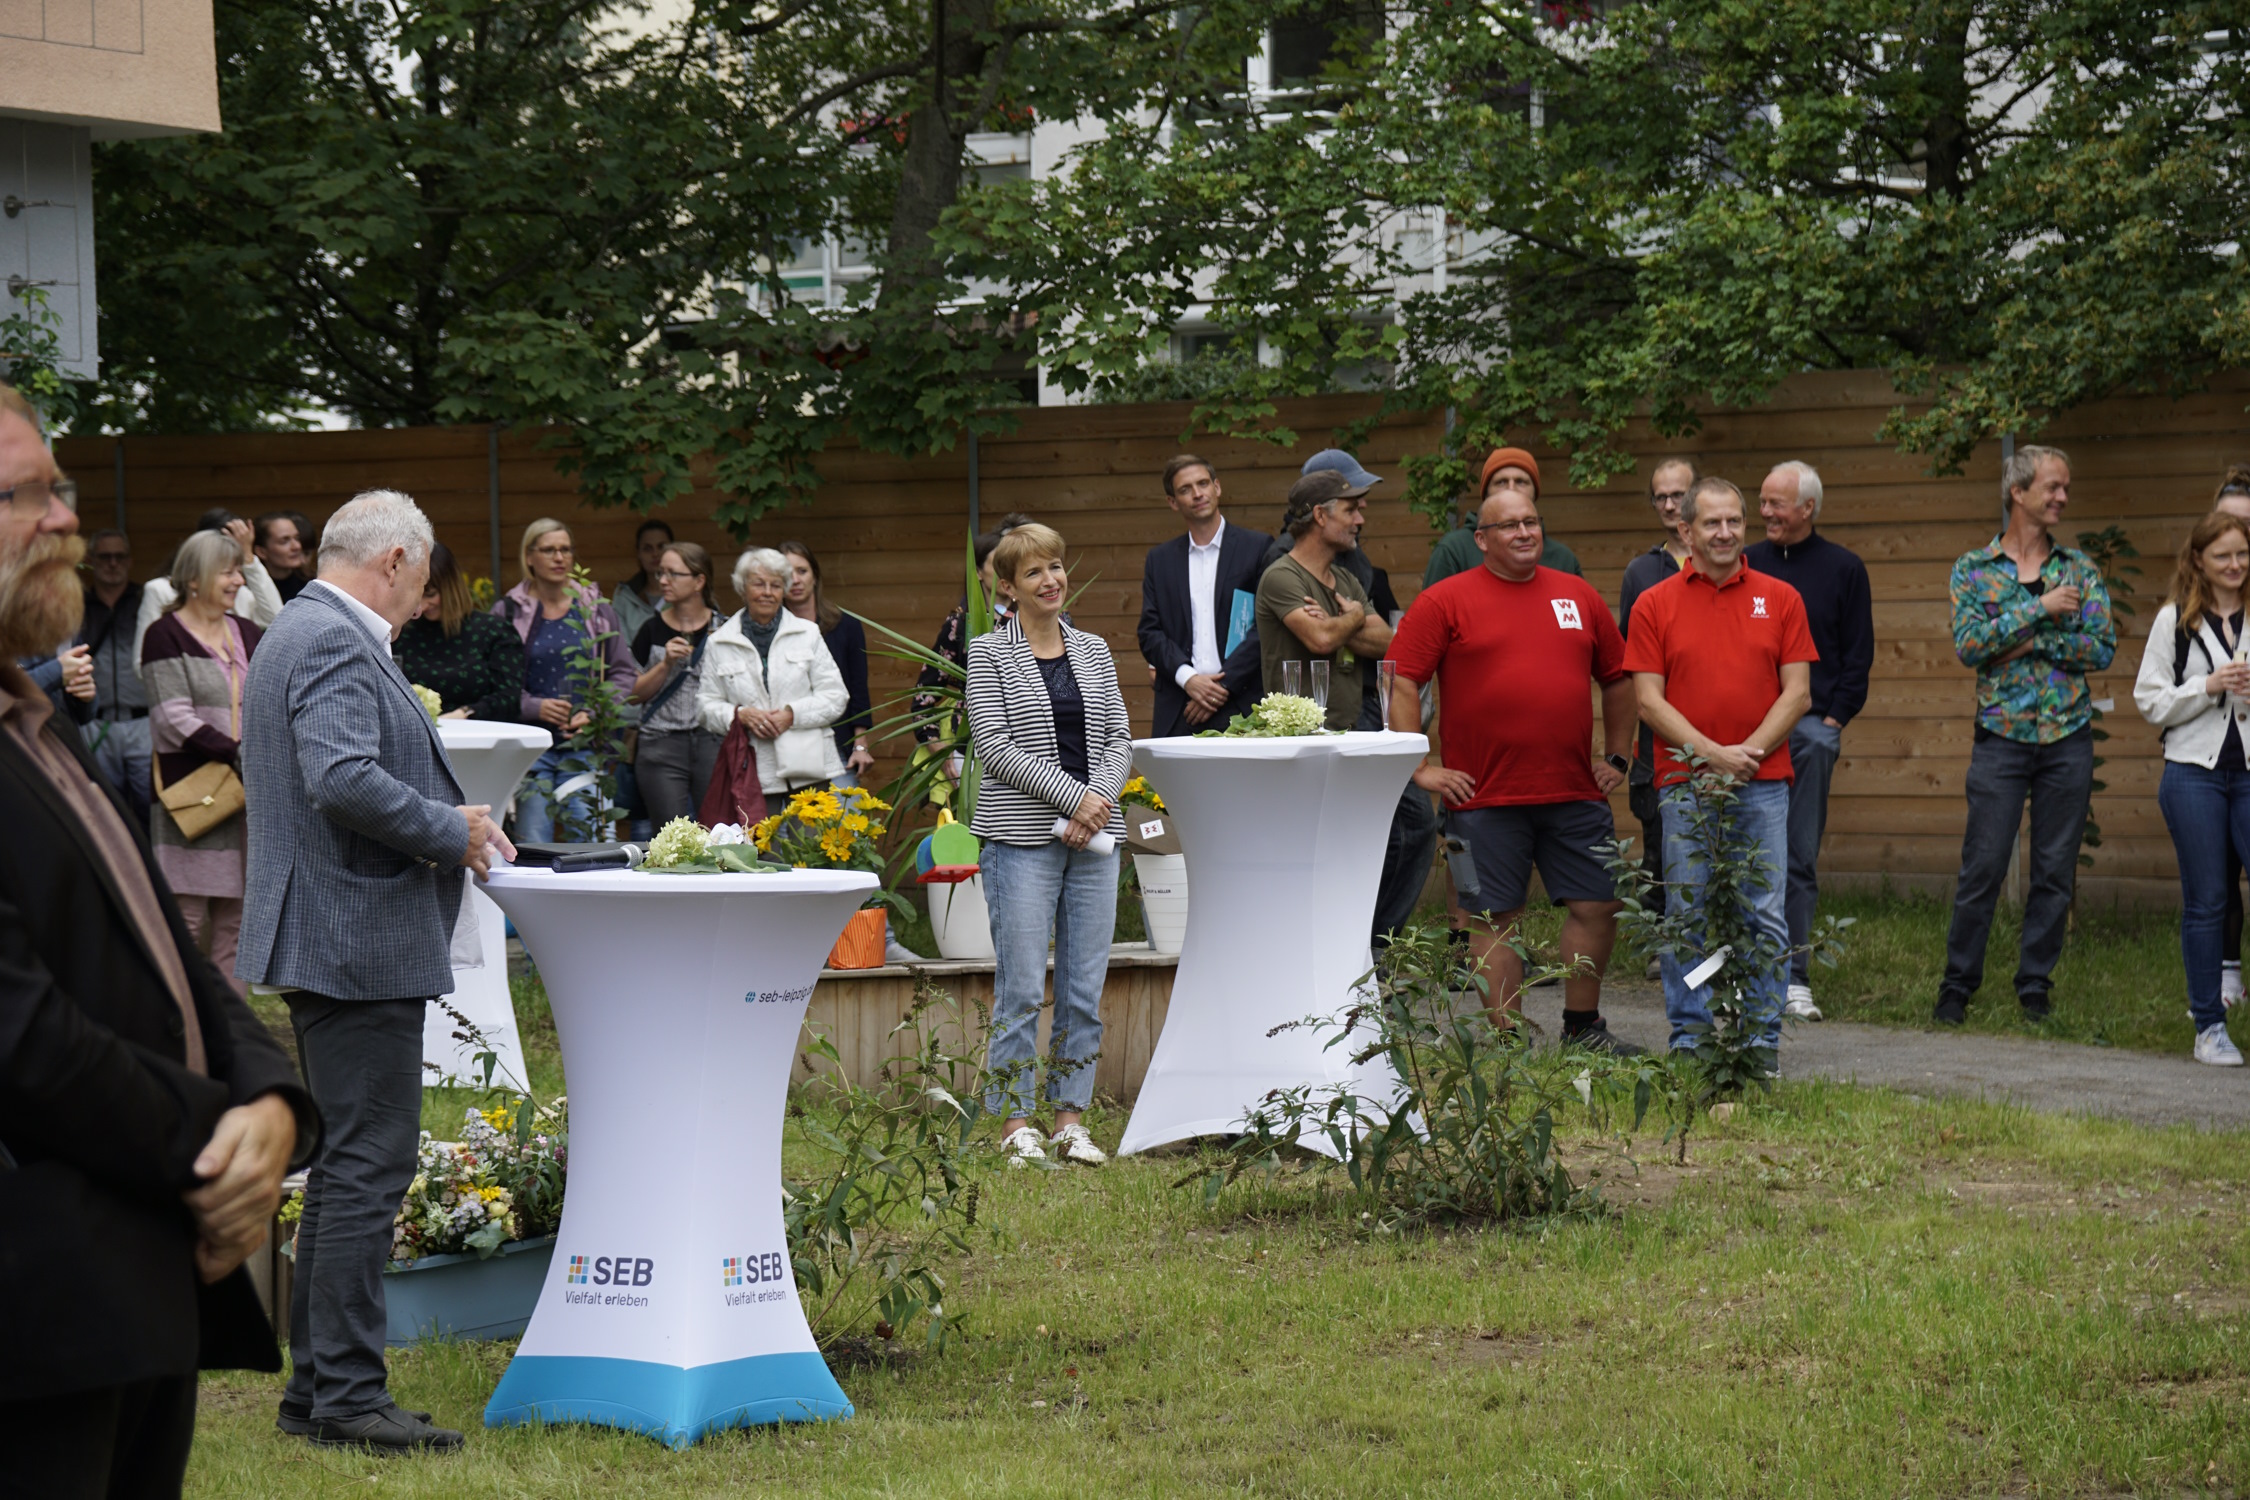 Eröffnung der Kita "Naturwerkstatt" am 28. August. Foto: Städtischer Eigenbetrieb Behindertenhilfe (SEB)